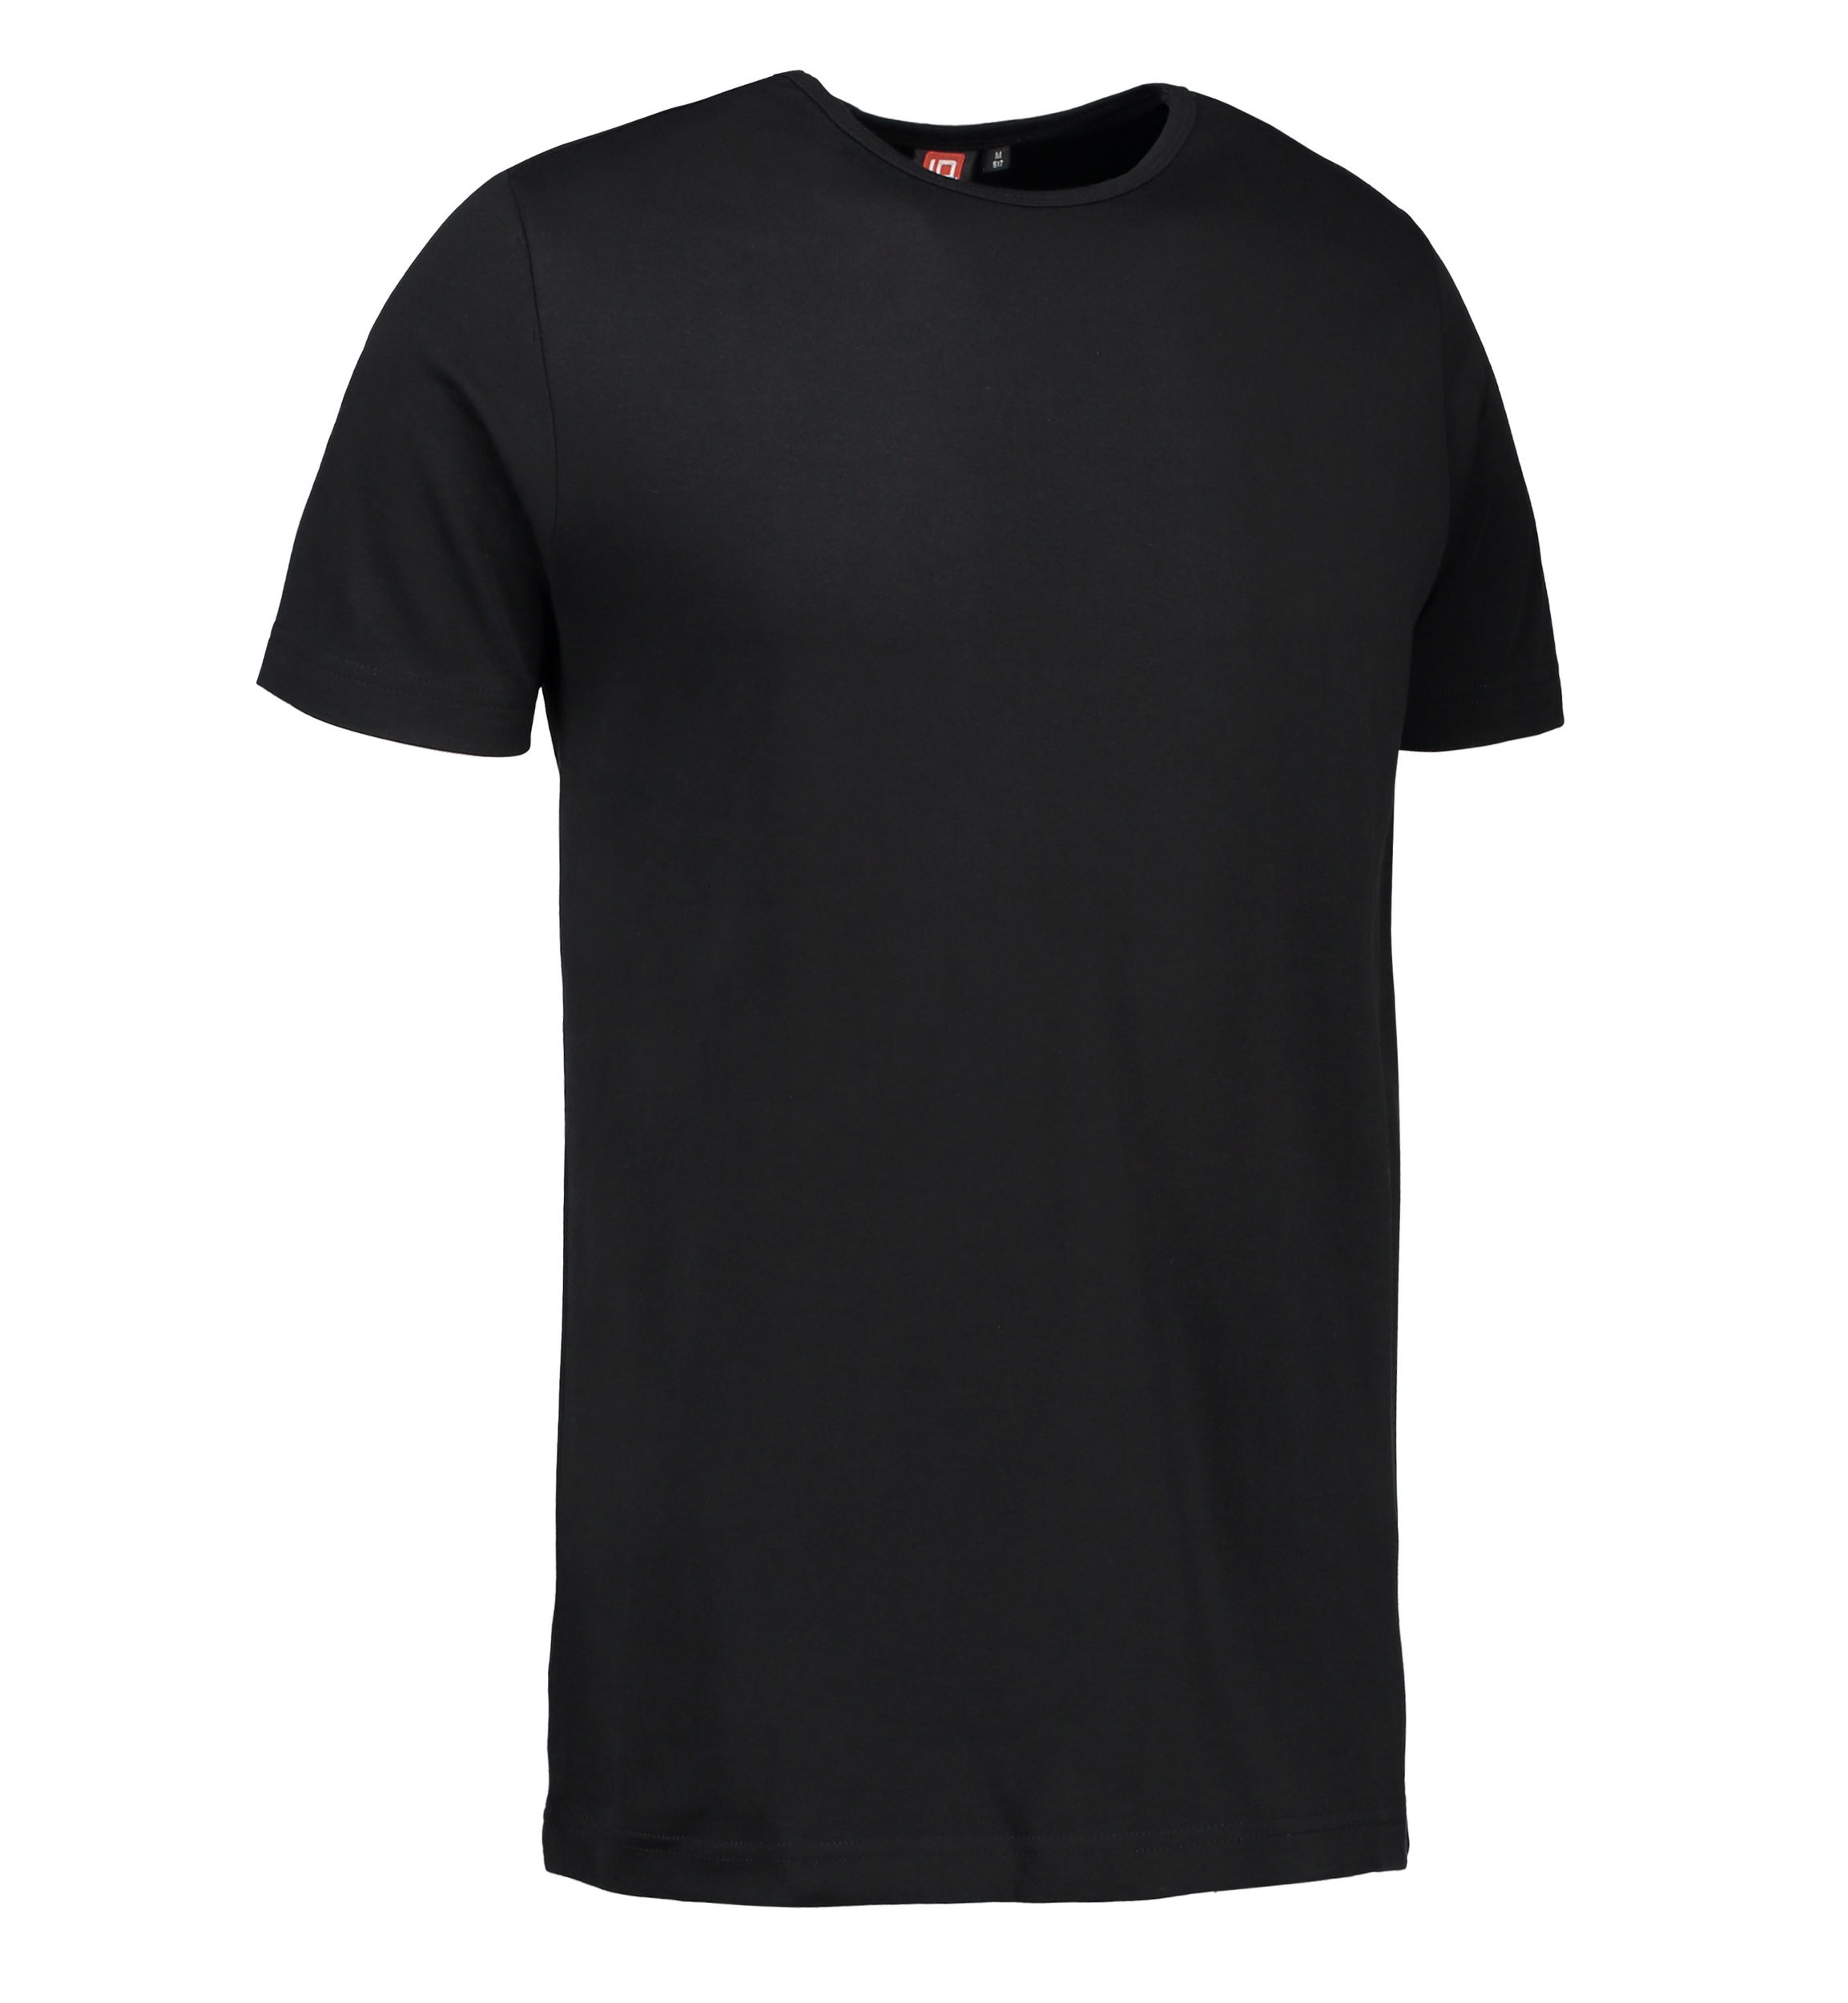 Billede af Sort t-shirt med rund hals til mænd - L hos Sygeplejebutikken.dk